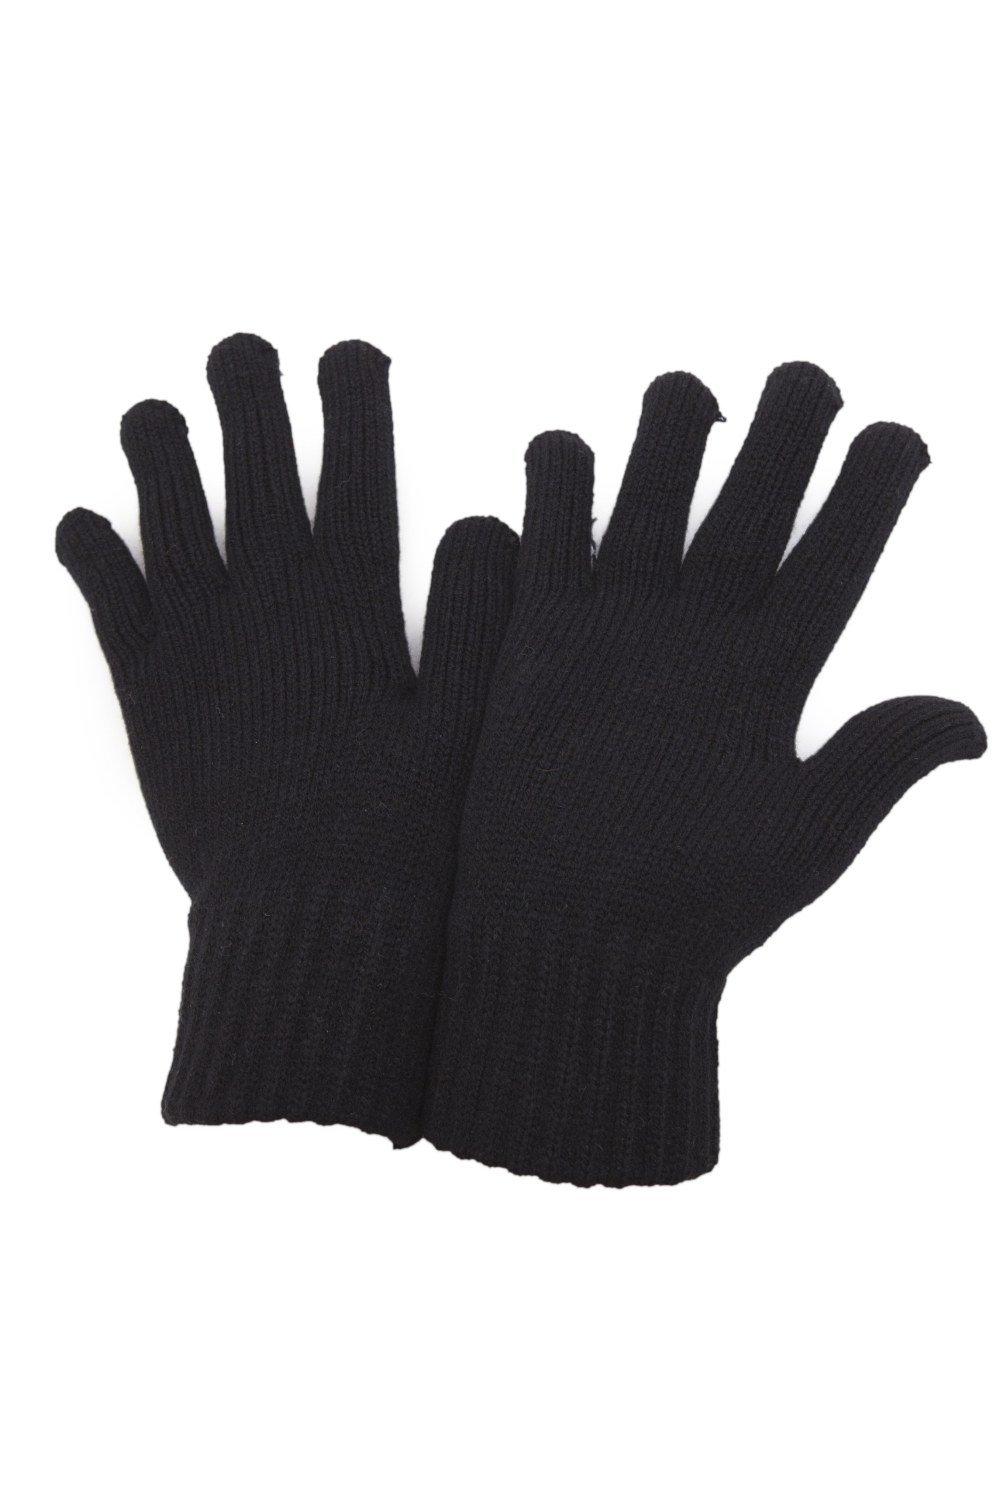 РАСПРОСТРАНЕНИЕ - Зимние перчатки Universal Textiles, черный распродажа термовязаные зимние перчатки universal textiles серый